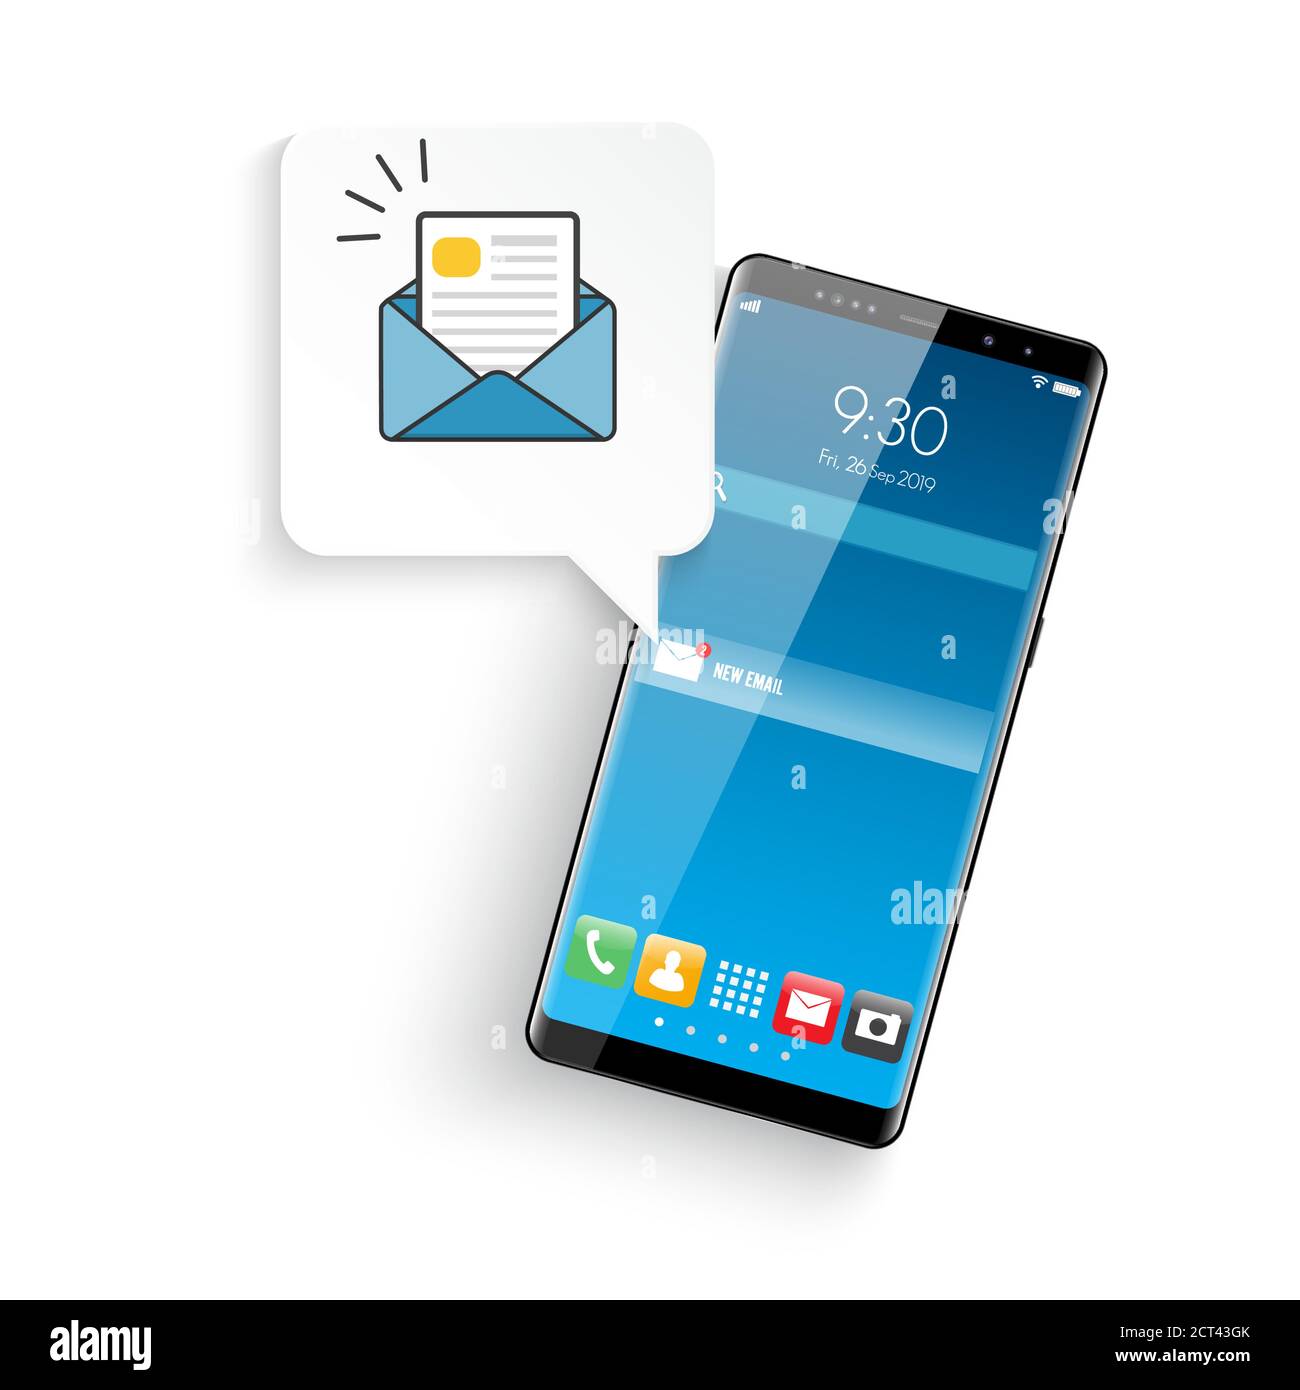 Neue realistische Handy modernen Stil. E-Mail-Benachrichtigungskonzept. Neue E-Mail auf dem Smartphone-Bildschirm. Vektorgrafik. Stock Vektor